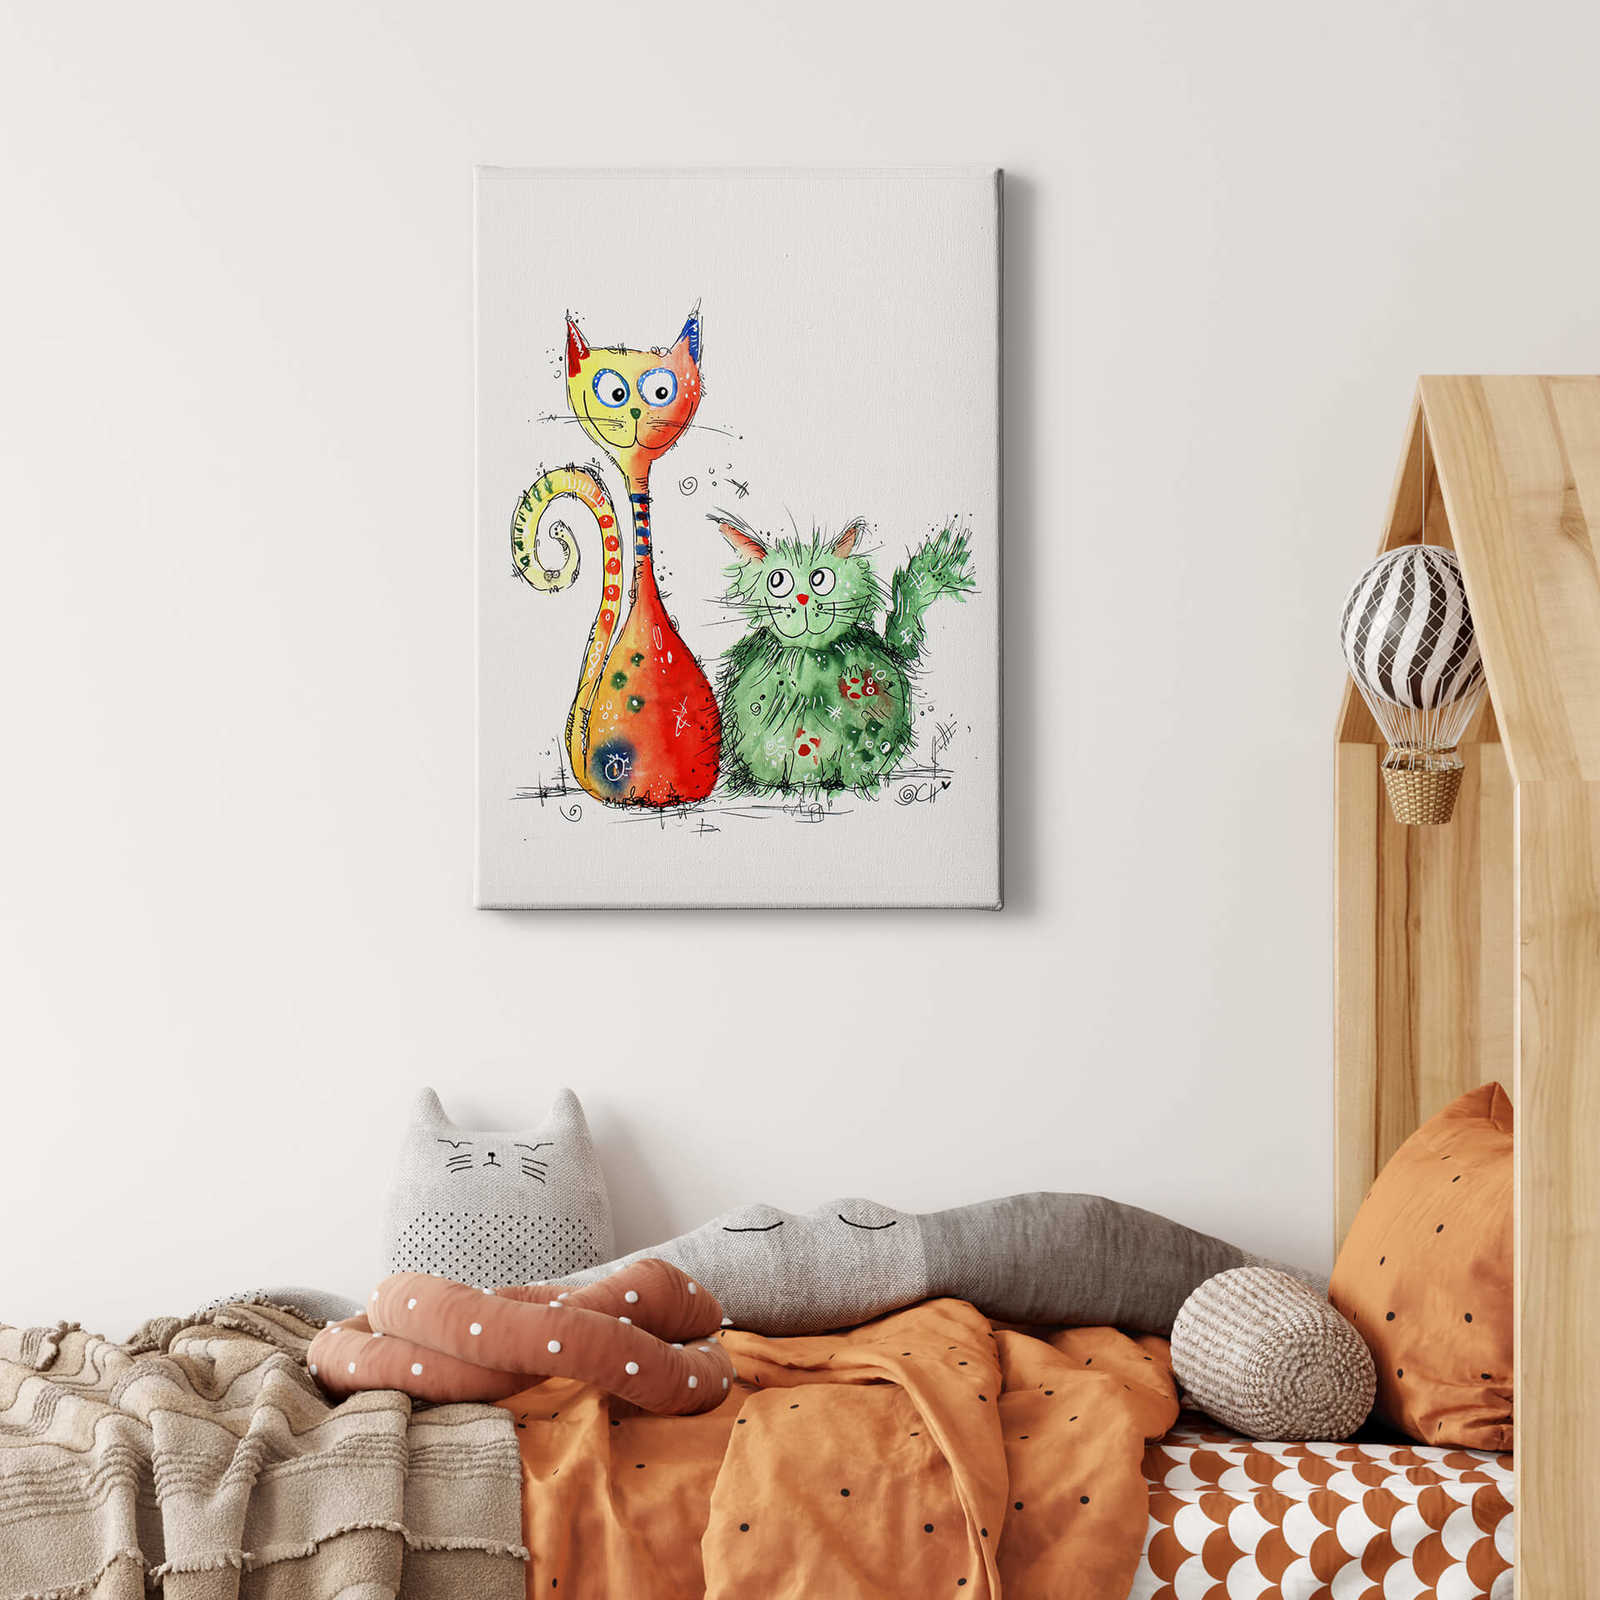             Tableau toile Hagenmeyer meilleurs amis, chats colorés - 0,50 m x 0,70 m
        